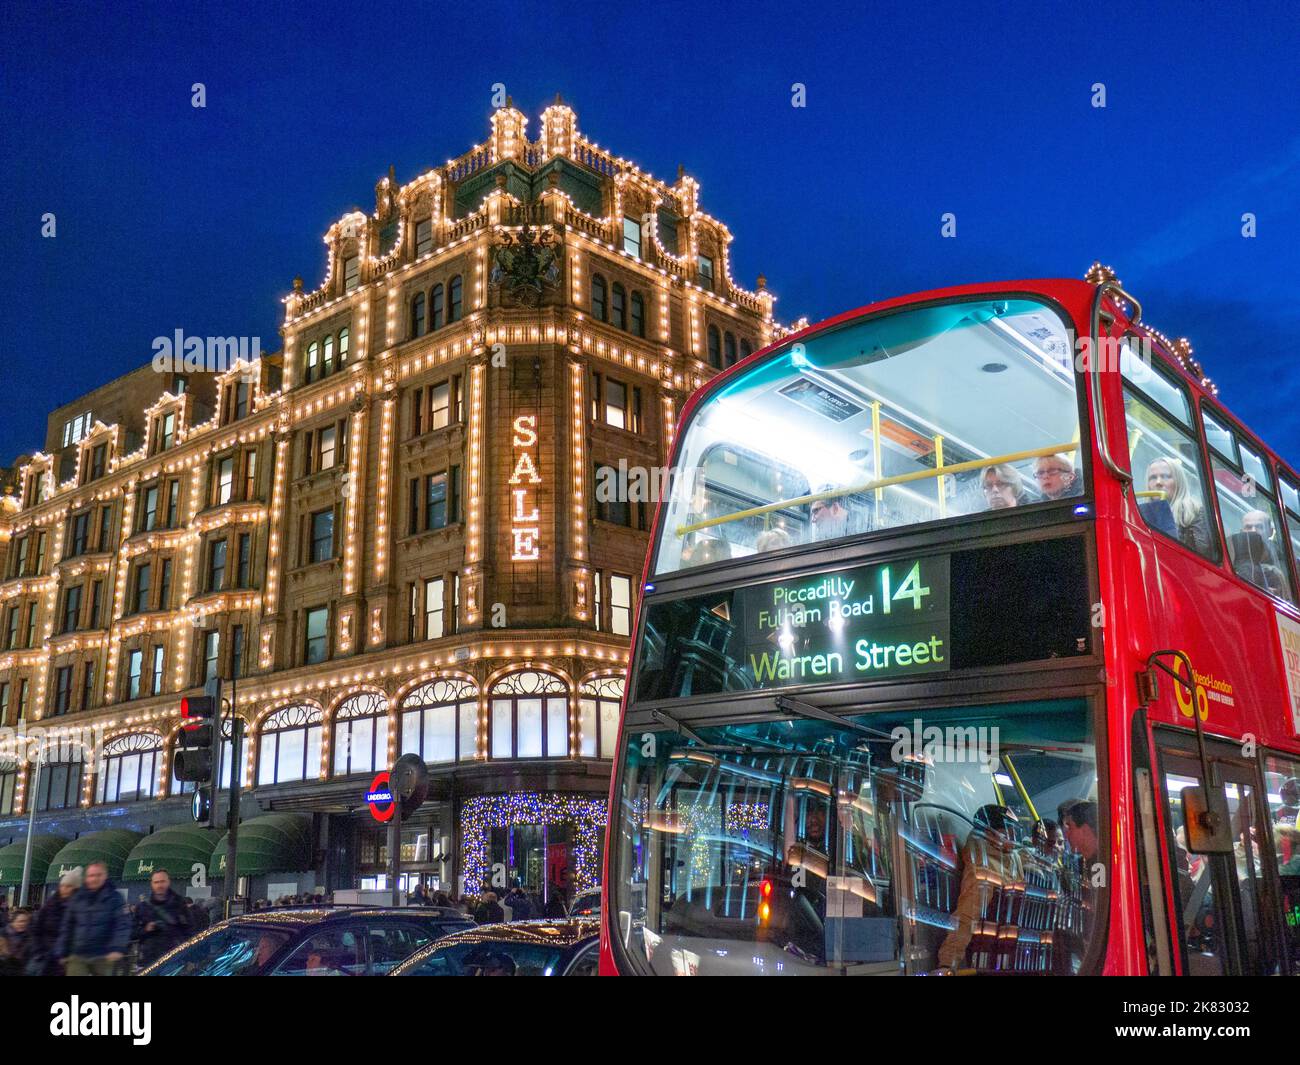 VERKAUF BUS TRANSPORT LONDON SHOPPING Harrods Kaufhaus in der Winternacht Abenddämmerung mit Sale Lights Shopper vorbei an Taxis und roten Bus im Vordergrund auf der Route 14 Knightsbridge London SW1 Stockfoto